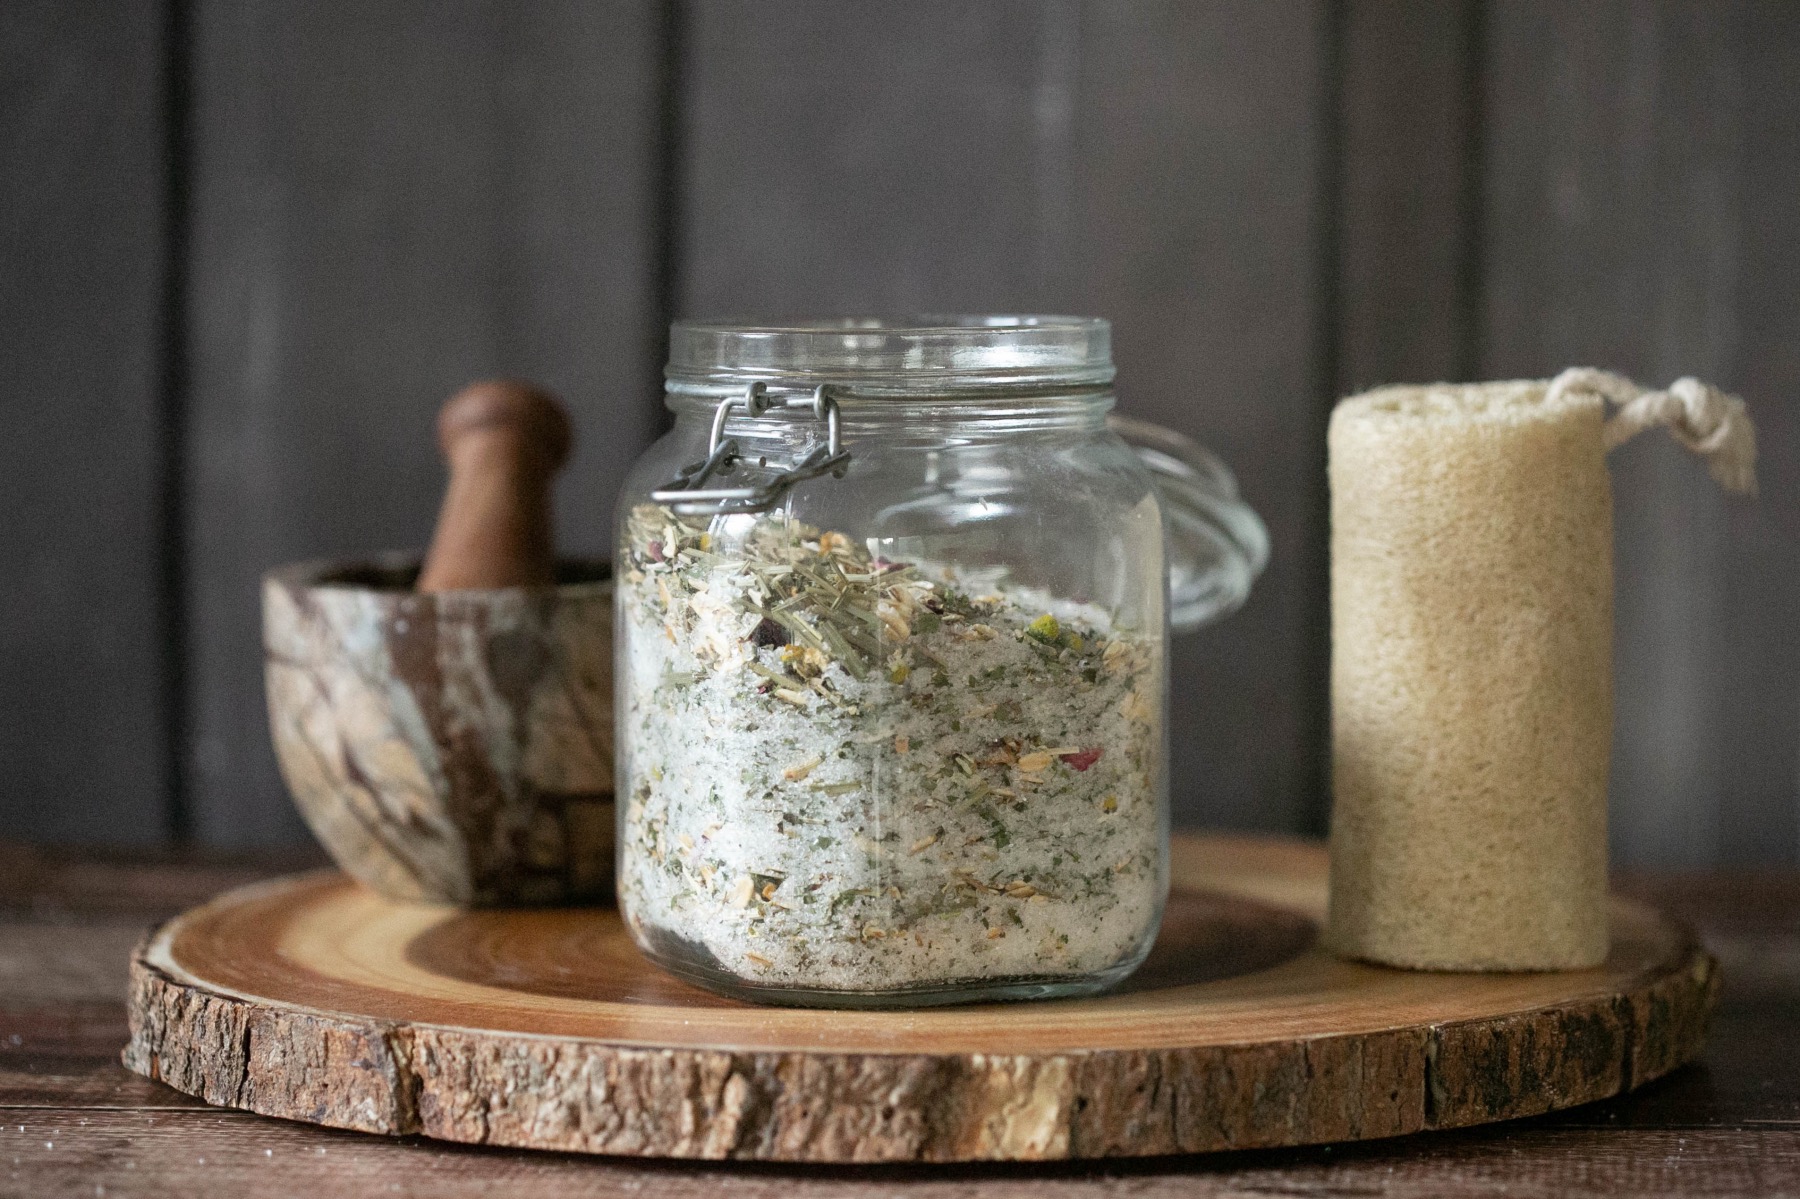 oatmeal herb and epsom salt bath soak recipe